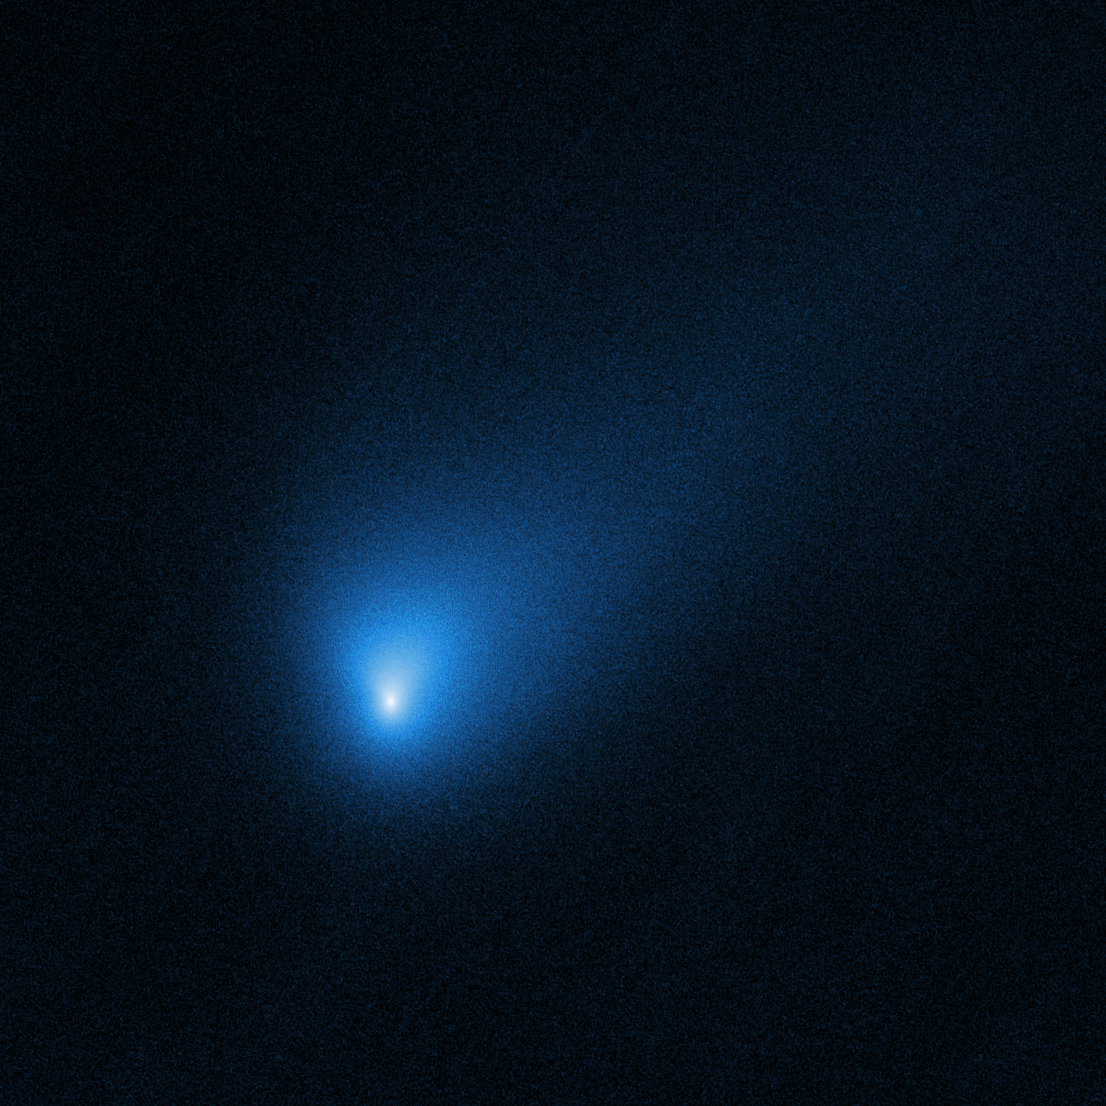 美国航天局共同照片的第一个星际彗星